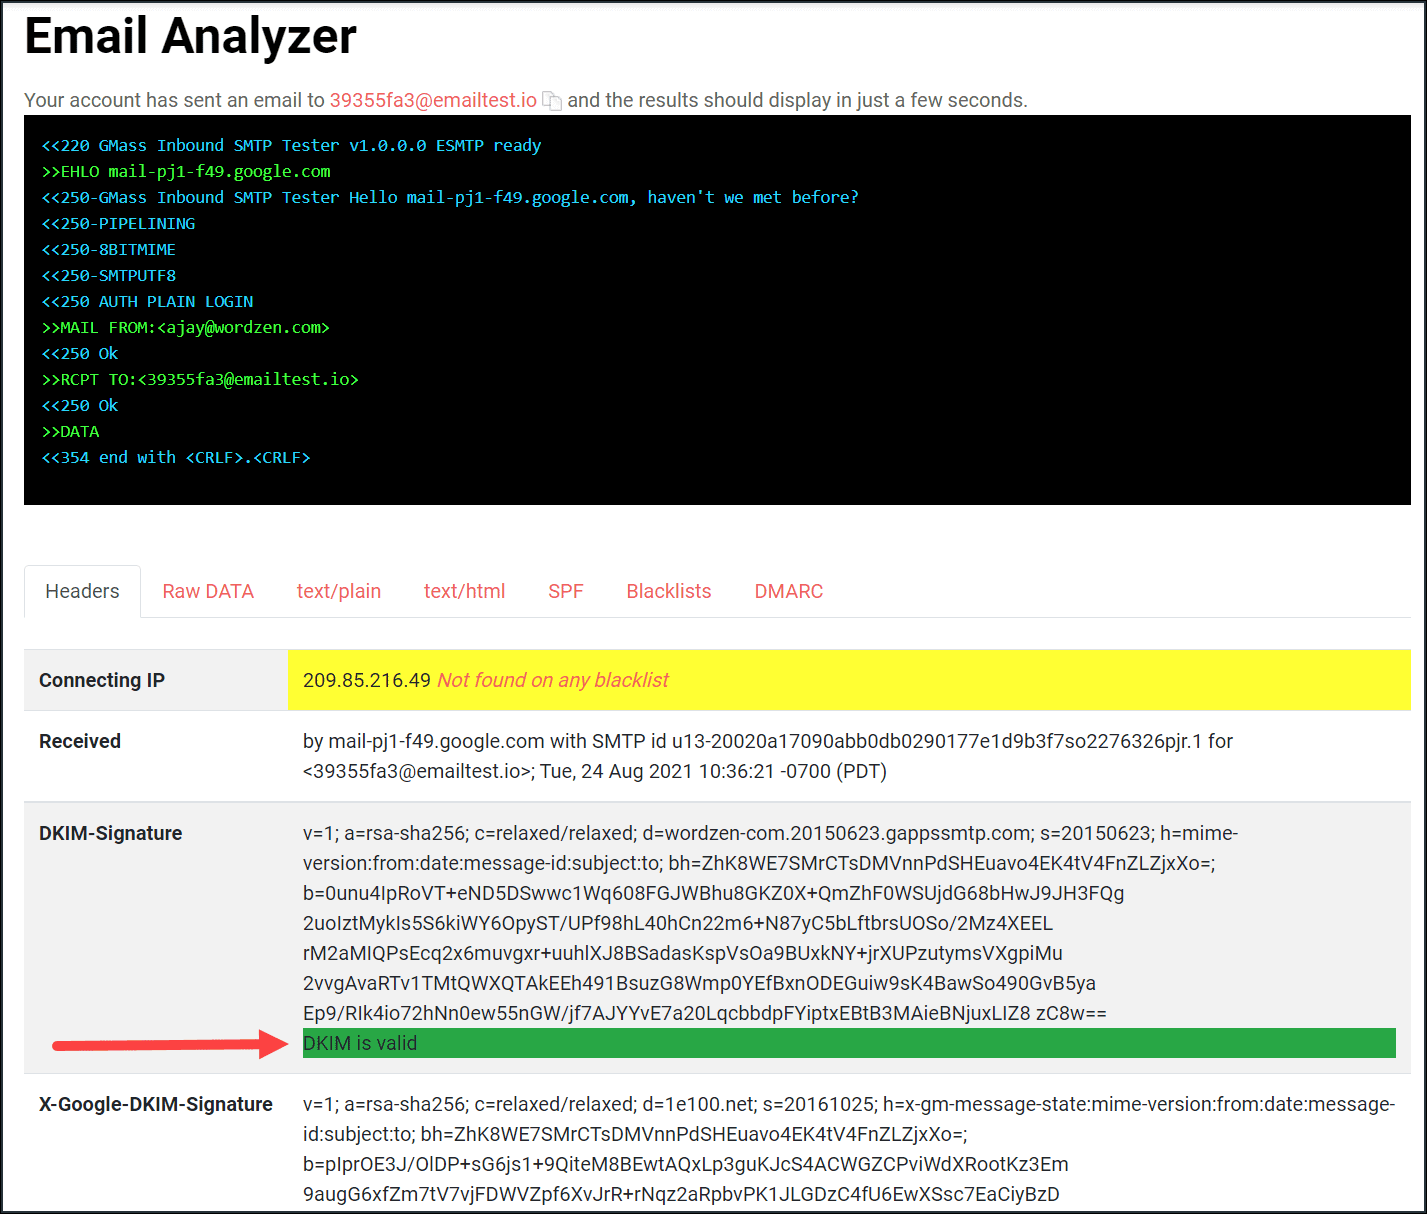 GMass's email analyzer tool